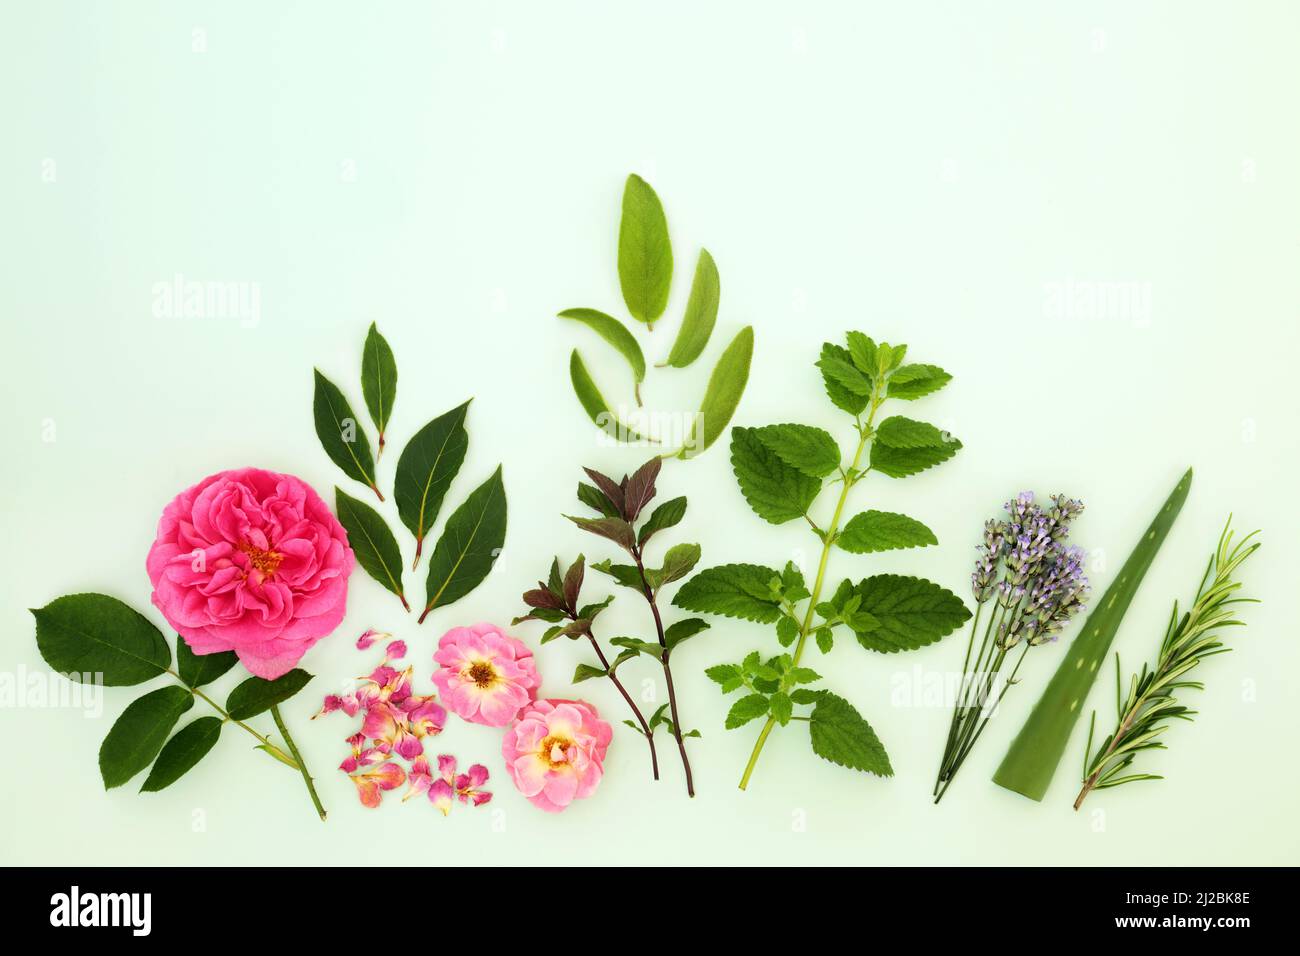 Natürliche Kräuter- und Blumenhilfsmittel mit Kräutern und Sommerblumen. Wird in der Hautpflege gegen das Altern verwendet und kann Psoriasis, Akne und Ekzeme lindern. Stockfoto